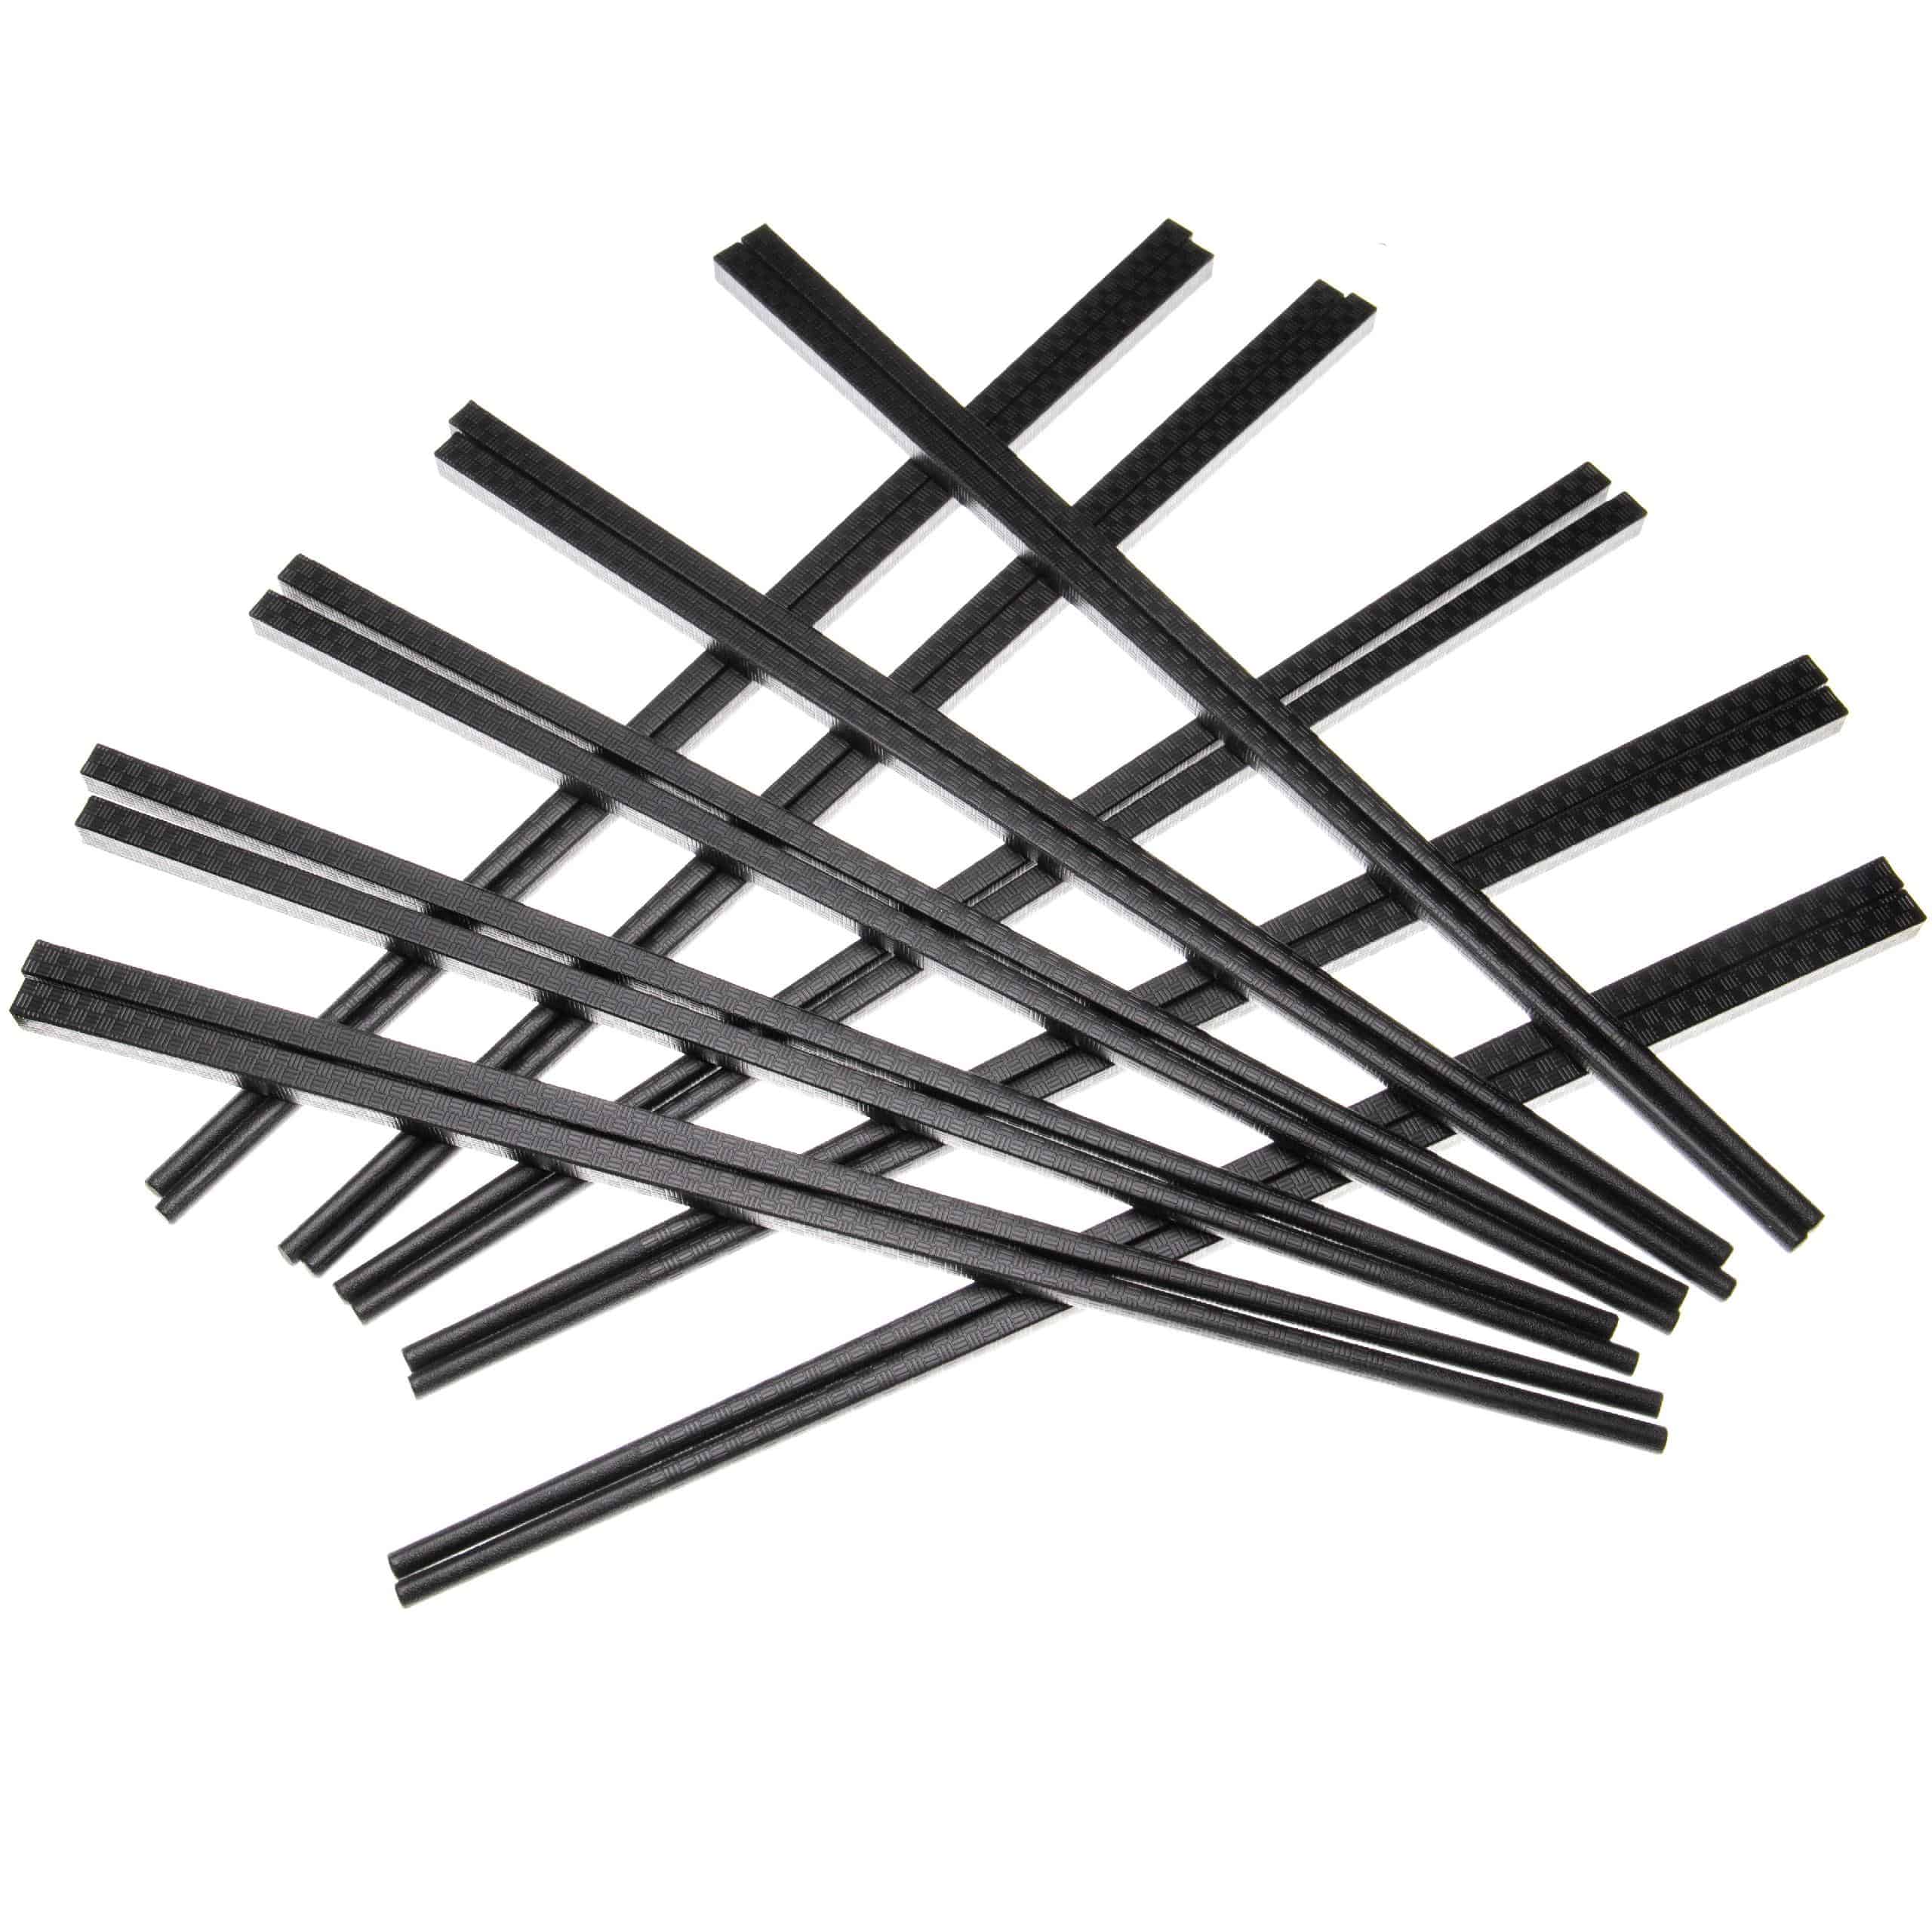 Chopstick Sets (10 Pair) - Plastic, black, 27 cm long, Reusable